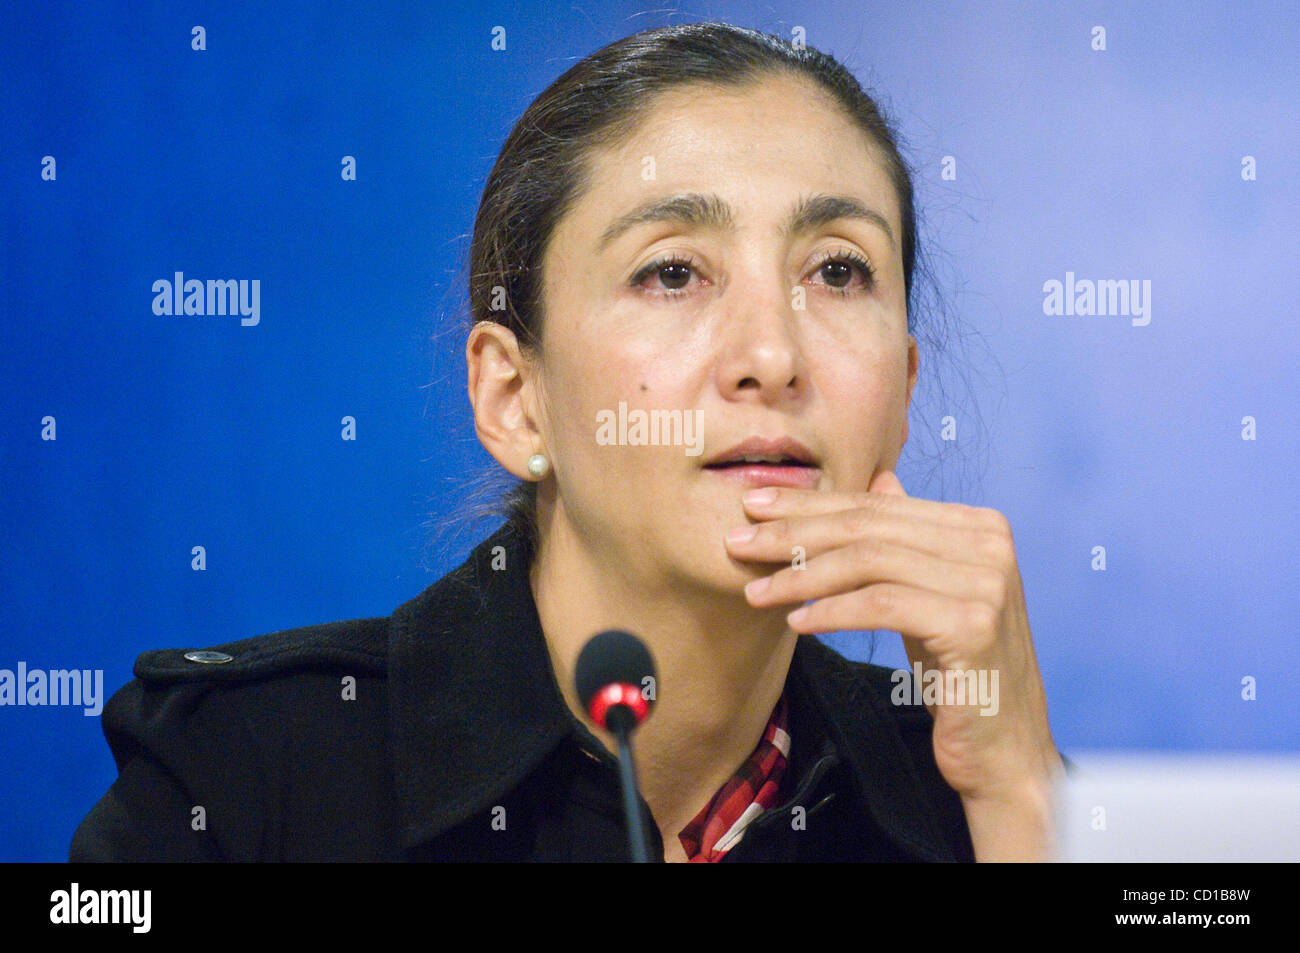 Befreiten französisch-kolumbianische Geisel Ingrid Betancourt während einer Pressekonferenz im Europäischen Parlament in Brüssel, 8. Oktober 2008.  Ref: B912 121875 0006 Datum: 08.10.2008 obligatorische CREDIT: UPPA/Photoshot Stockfoto